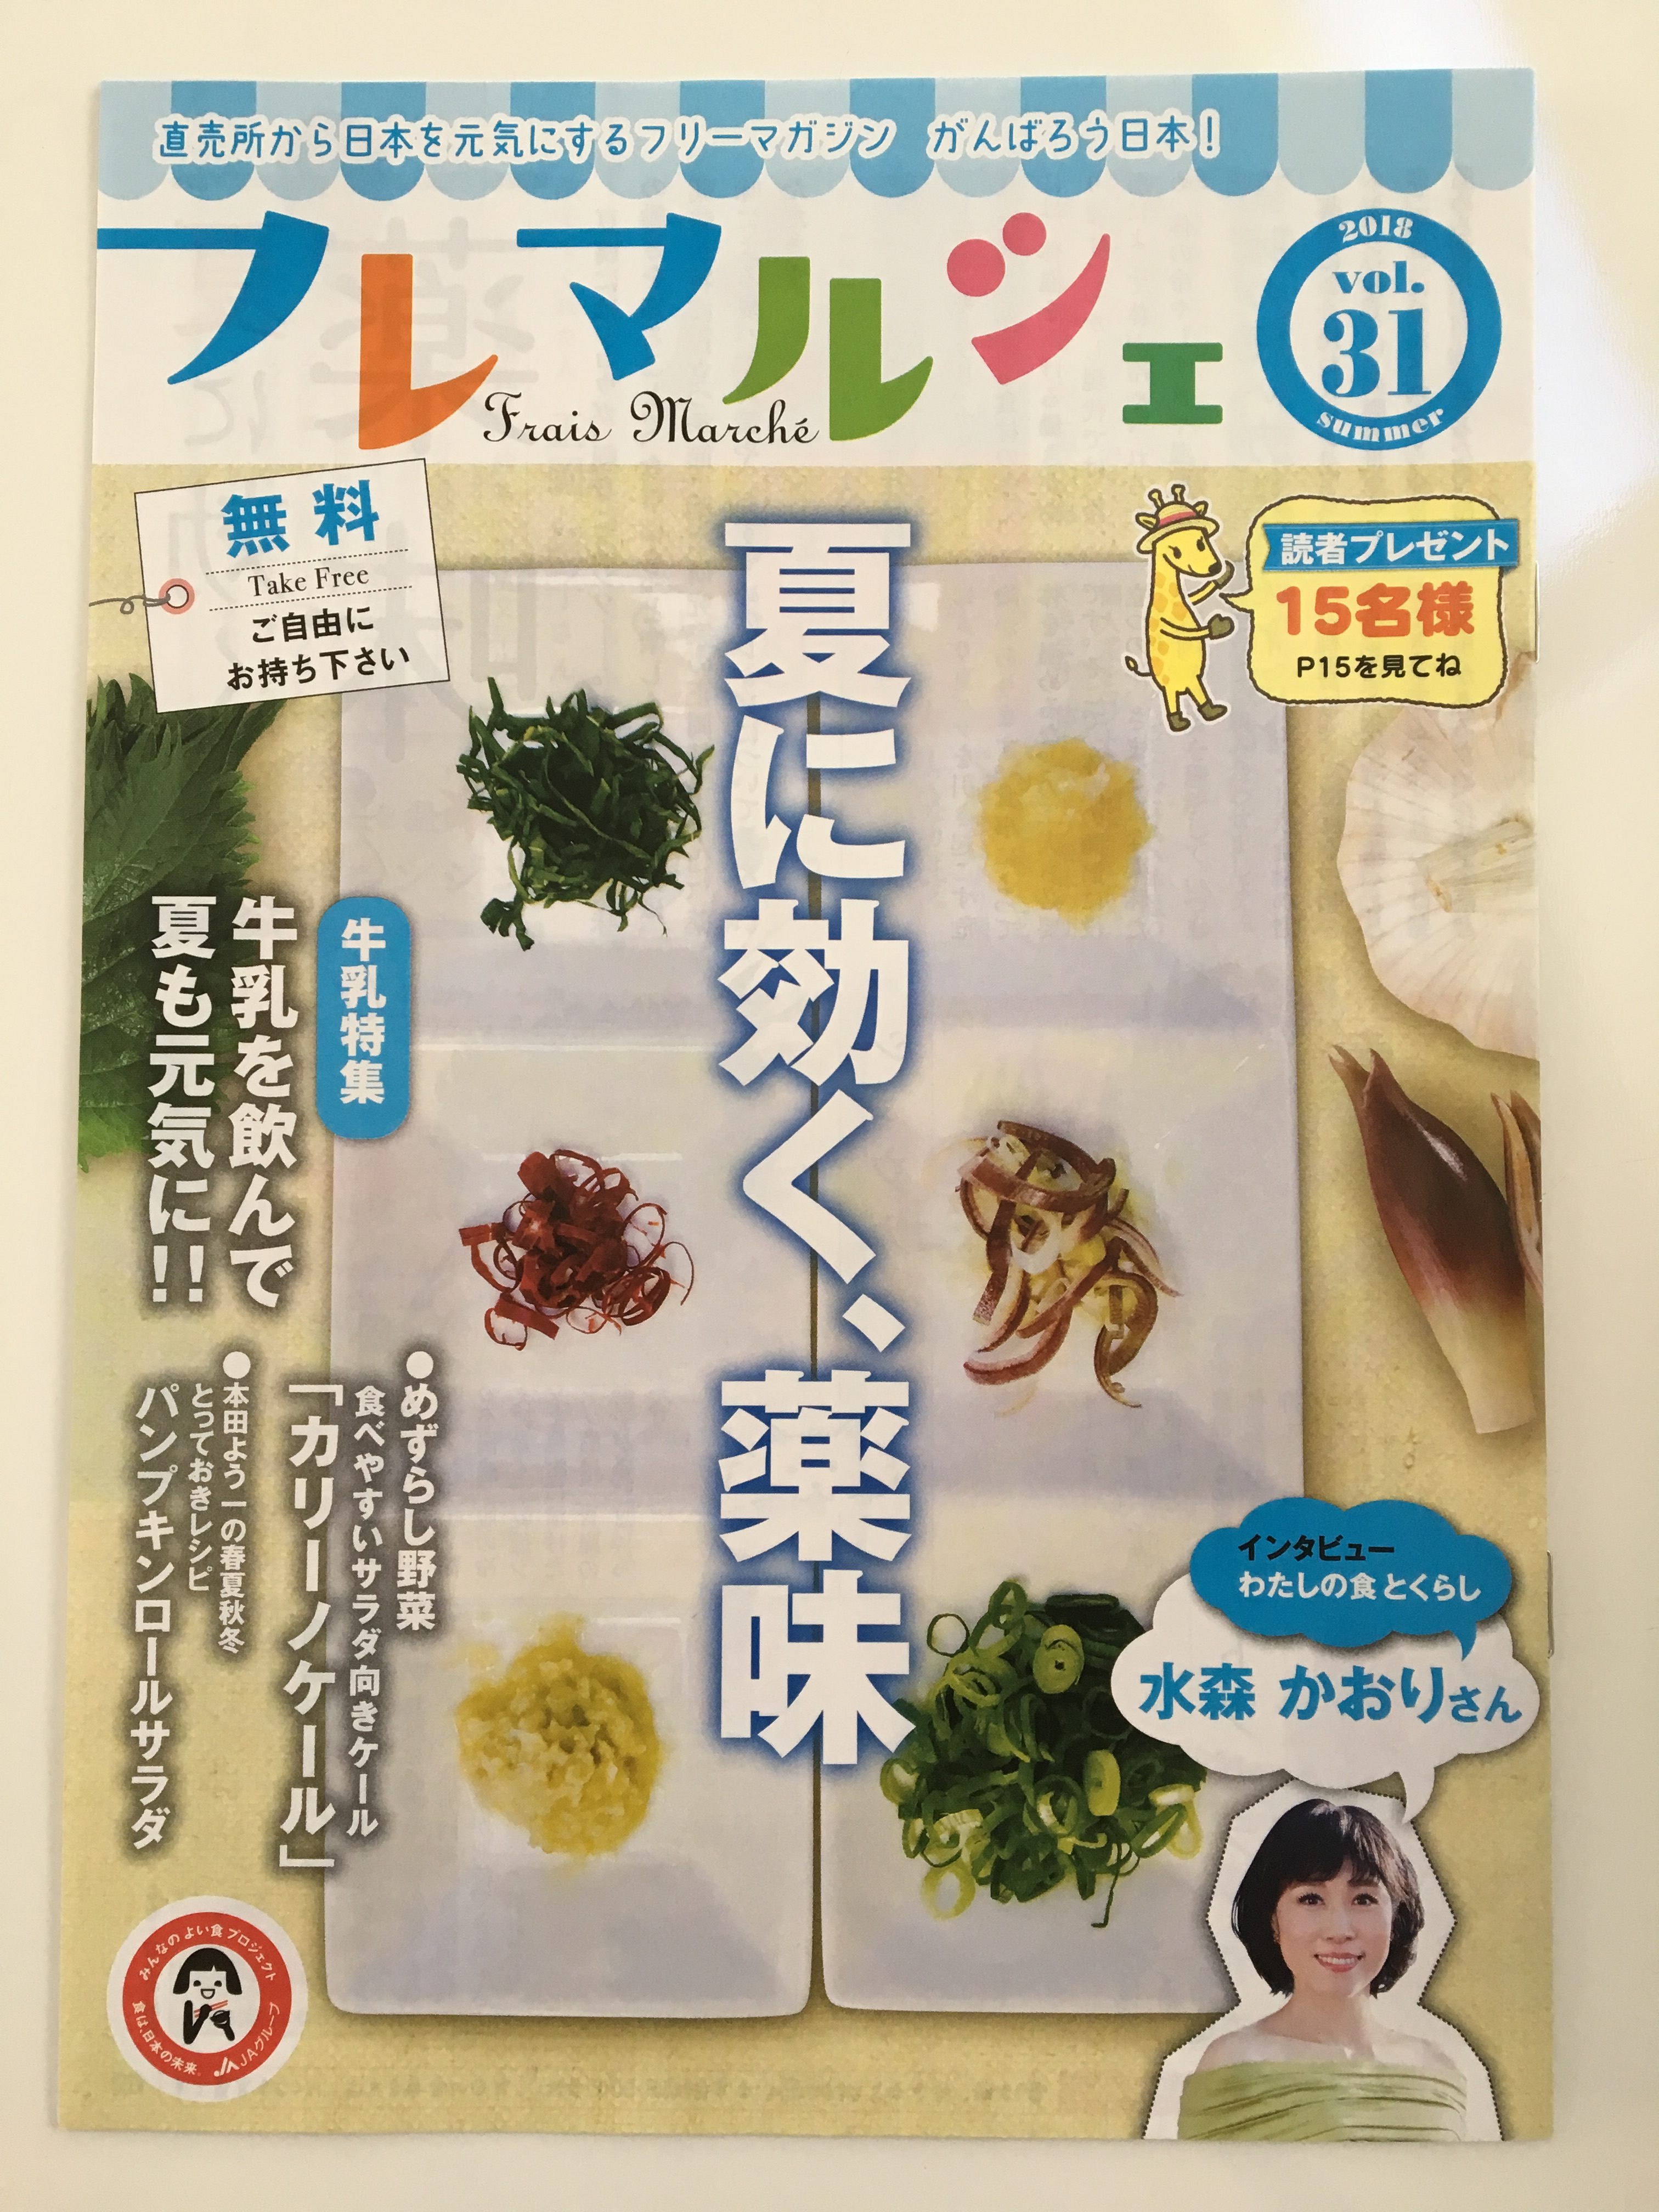 【レシピ掲載】日本農業新聞「フレマルシェ」ミルクでコクうま夏レシピ＆キッチン工事